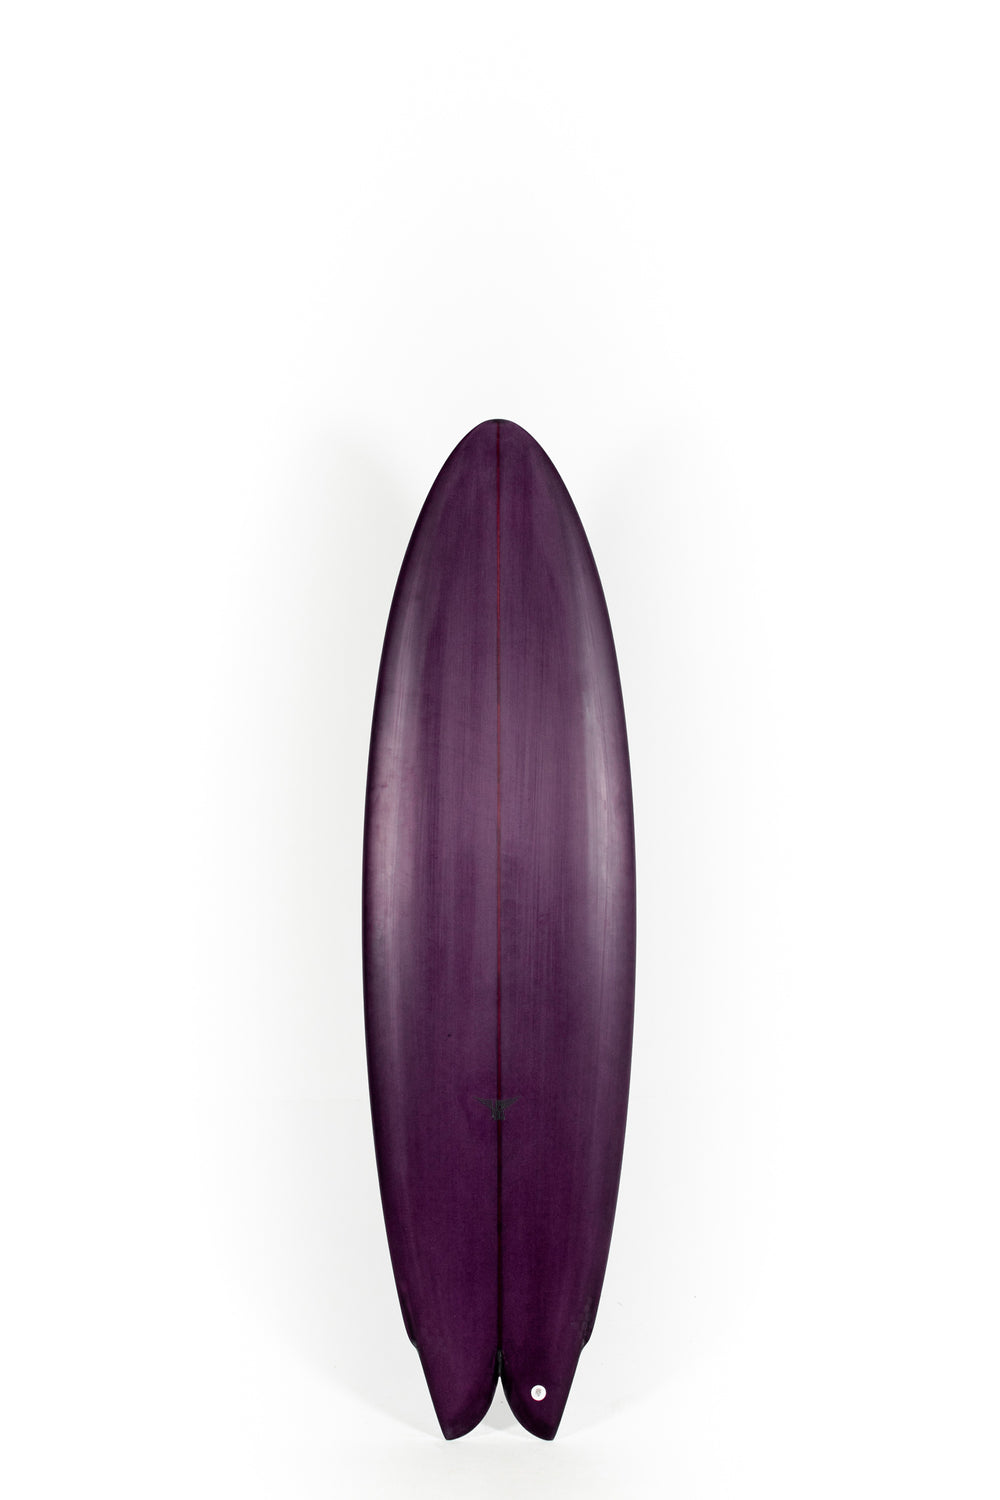 Pukas Surf Shop - Joshua Keogh Surfboard - M2 FLAT by Joshua Keogh - 6'6